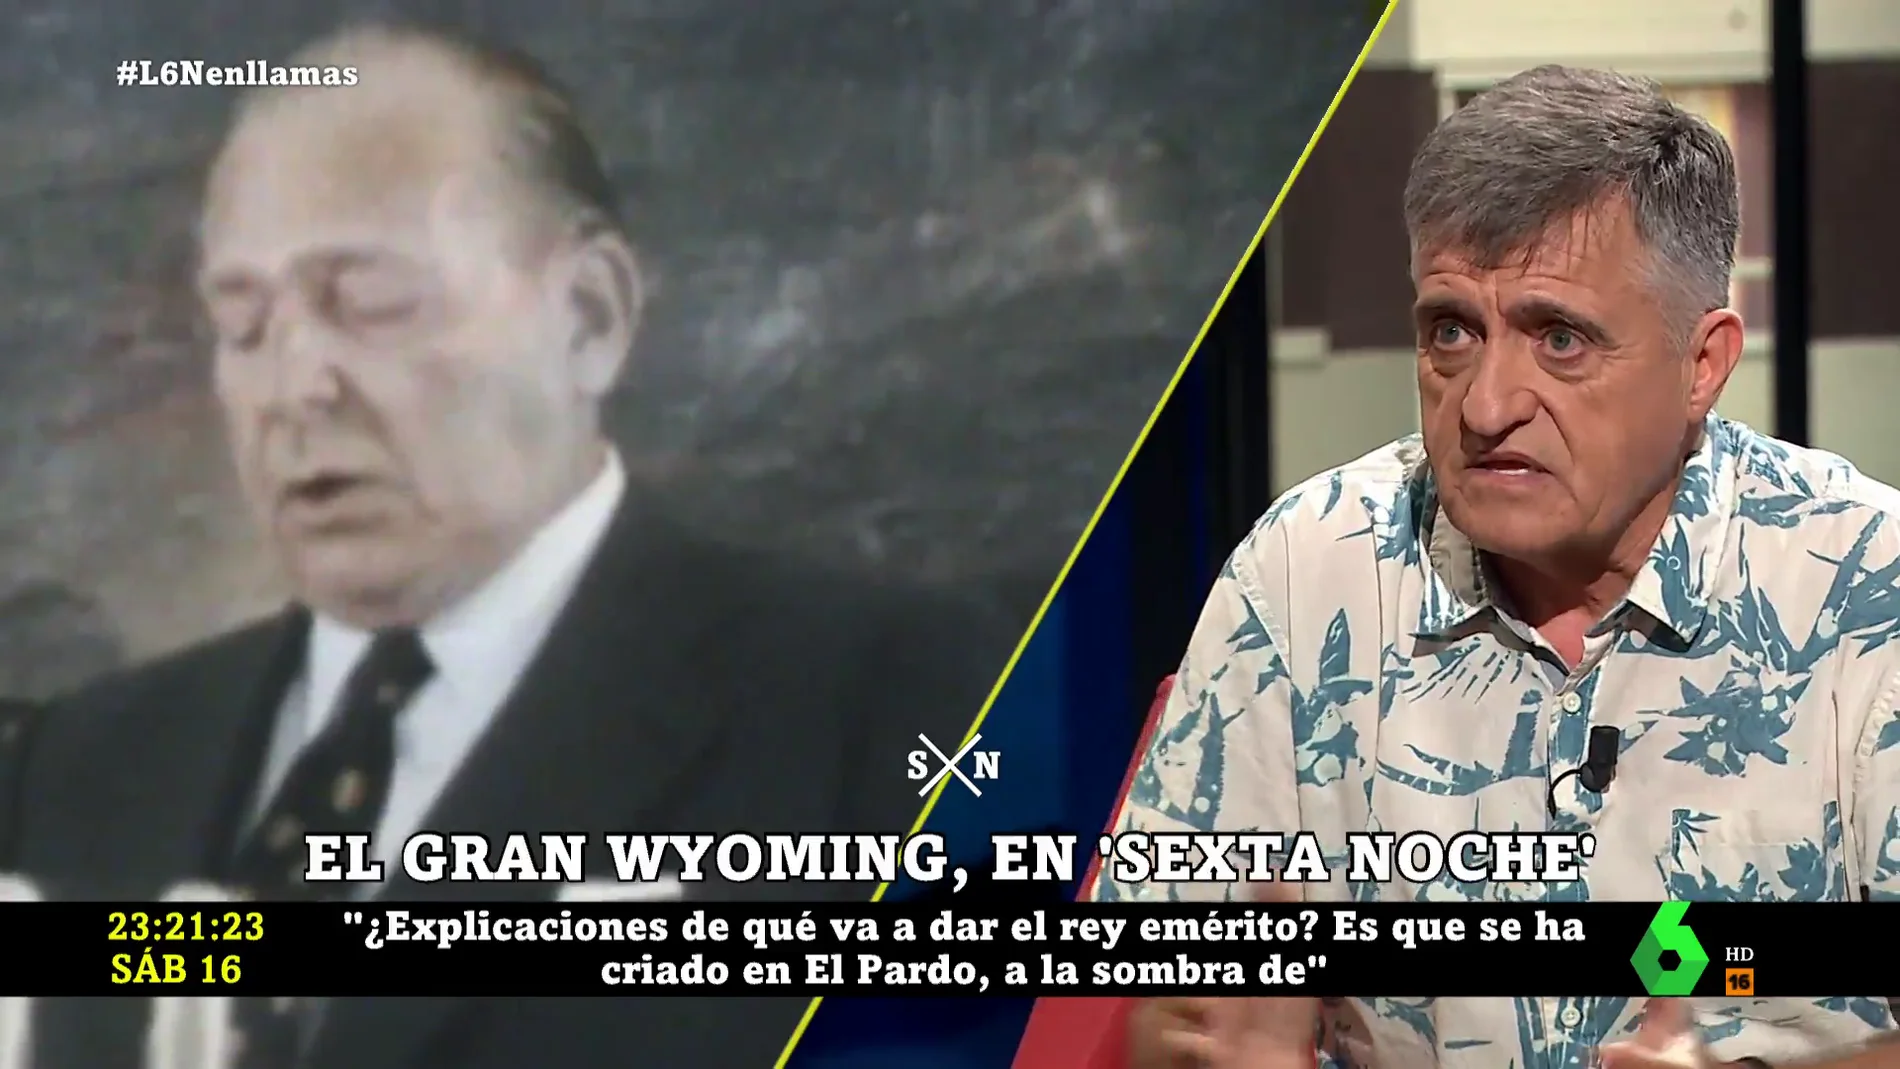 Wyoming relata la "carta demoledora" de Don Juan, el padre de Juan Carlos I, a su hijo: "De aquellos polvos..."